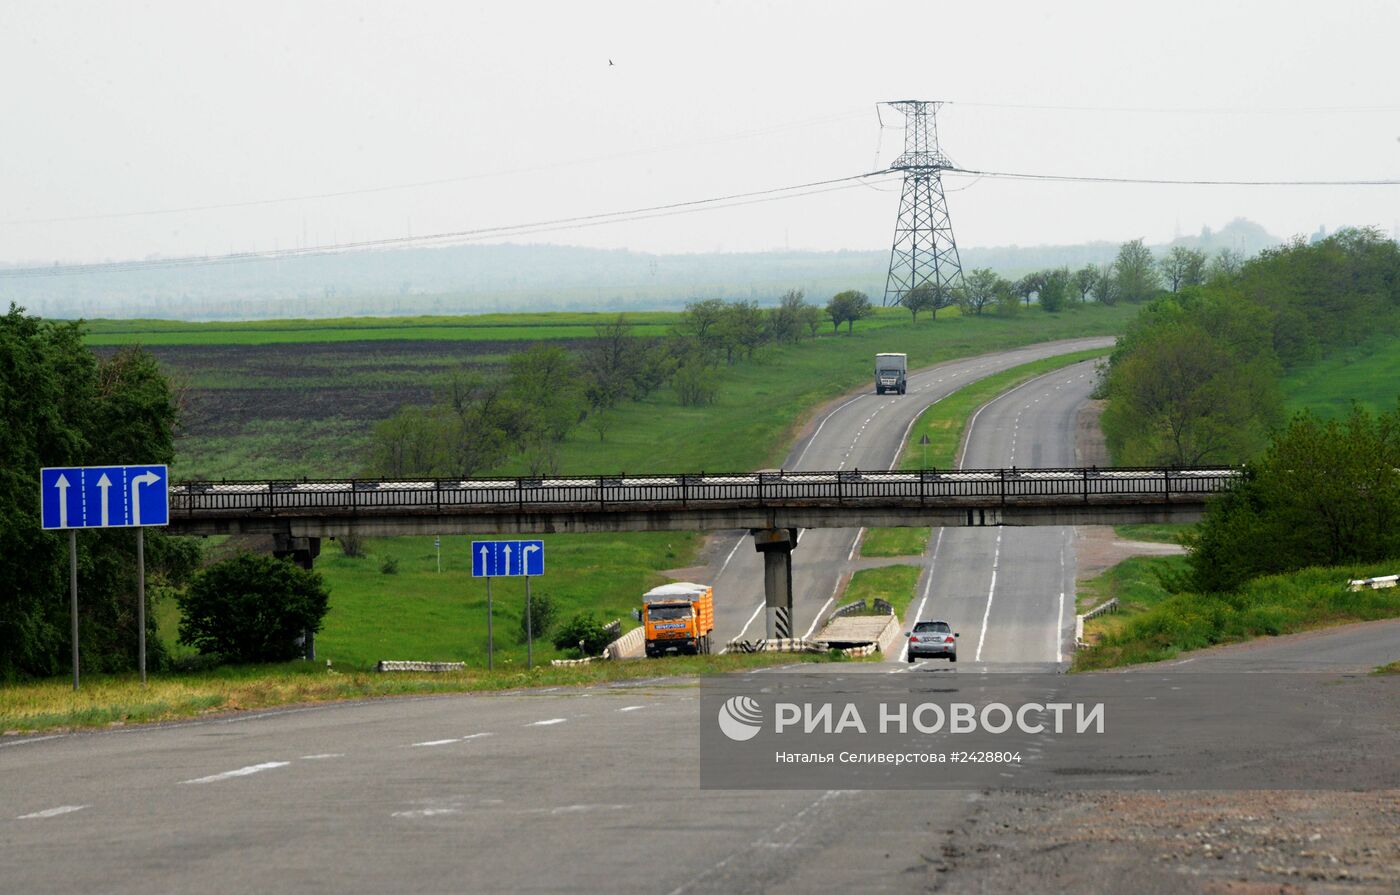 Развязка объездного пути в сторону Симферополя и Одессы